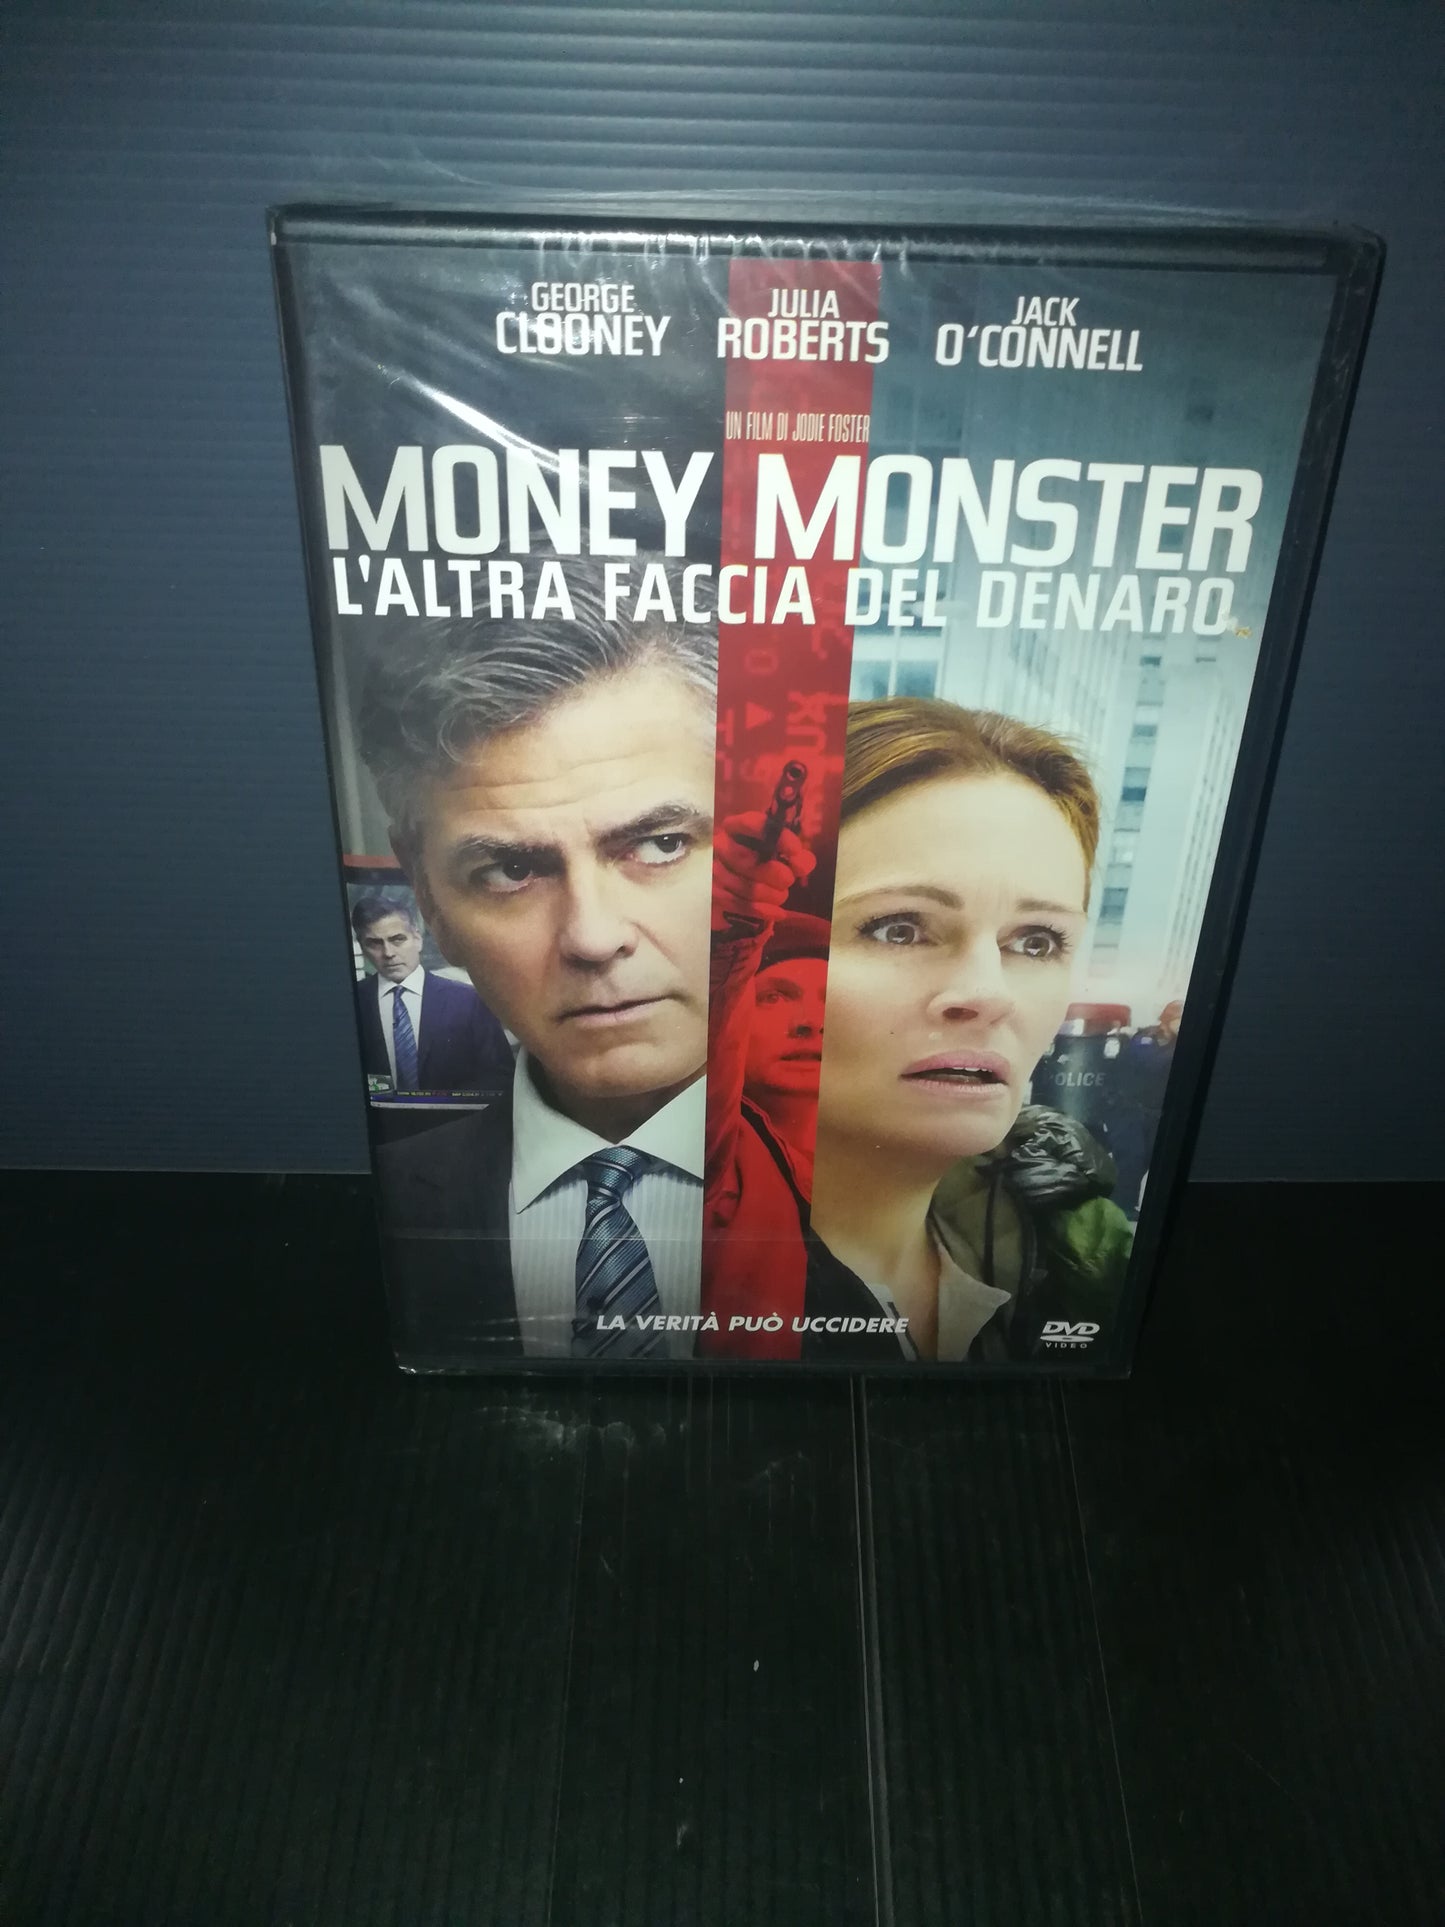 "Money Monster.L'altra faccia del denaro" Clooney/Roberts DVD